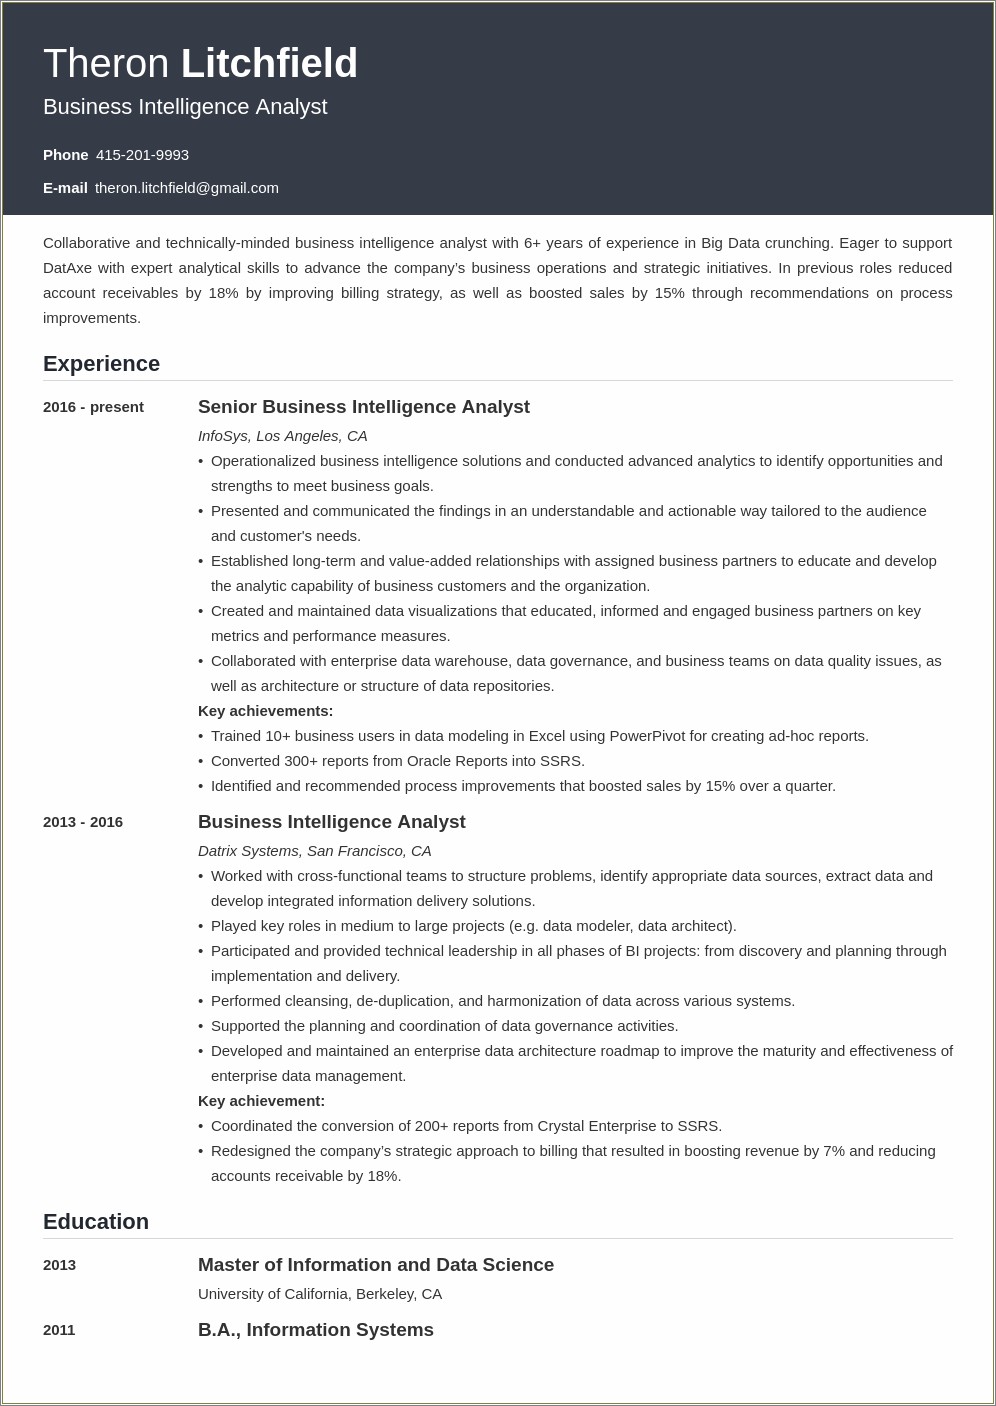 Sample Resume For Data Warehouse Analyst